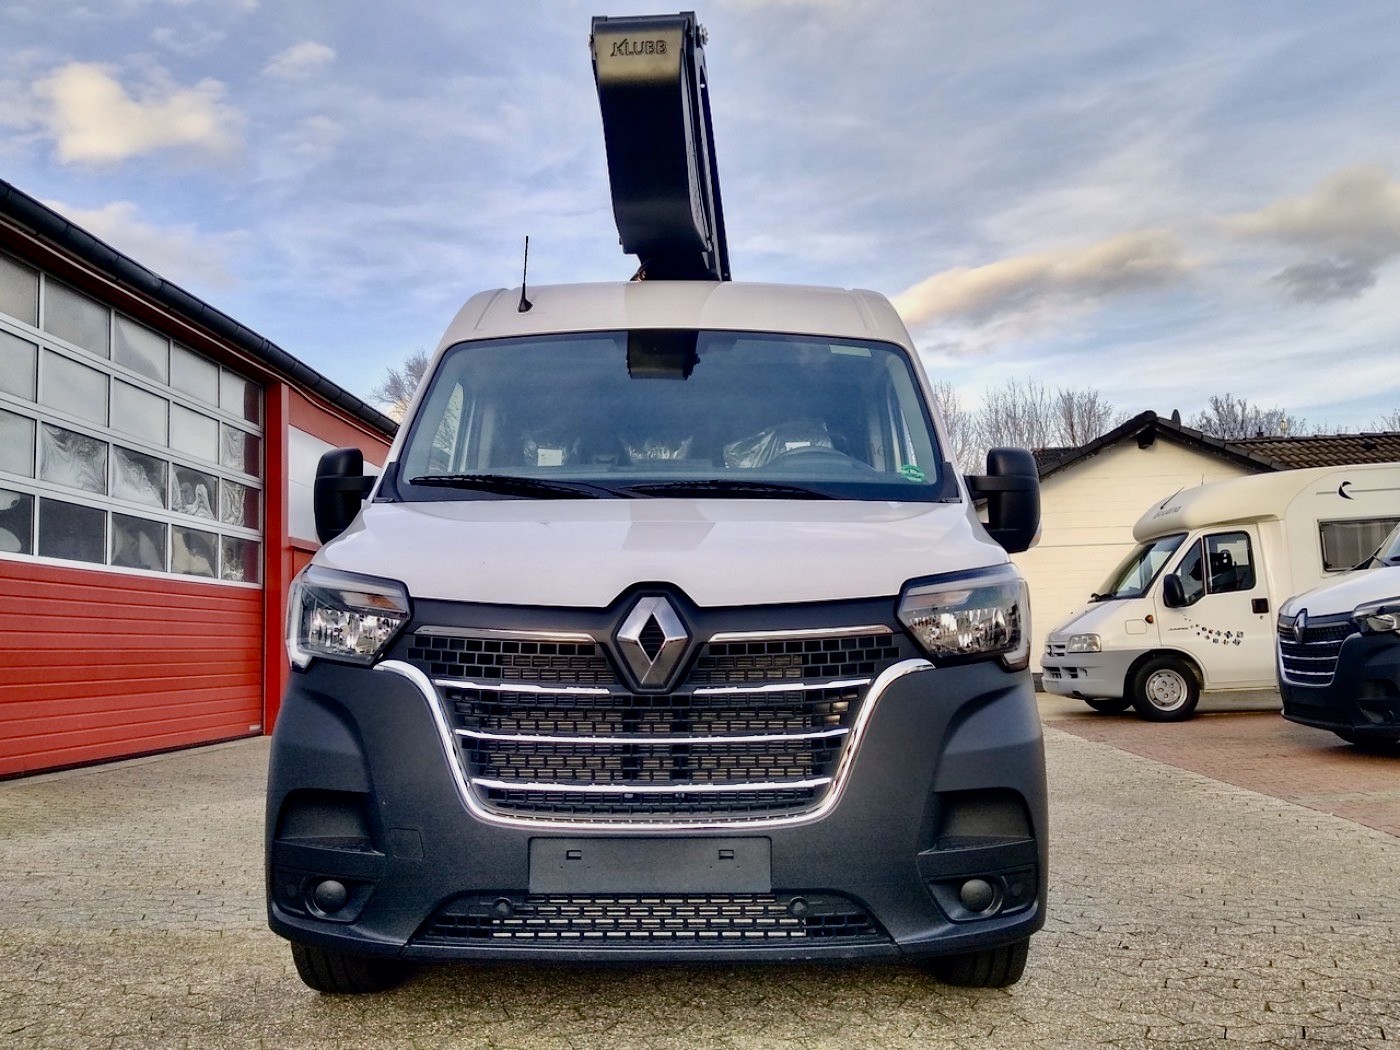 Renault - Master nacelle élévatrice KLUBB K42P 15m véhicule neuf EURO6d TEMP